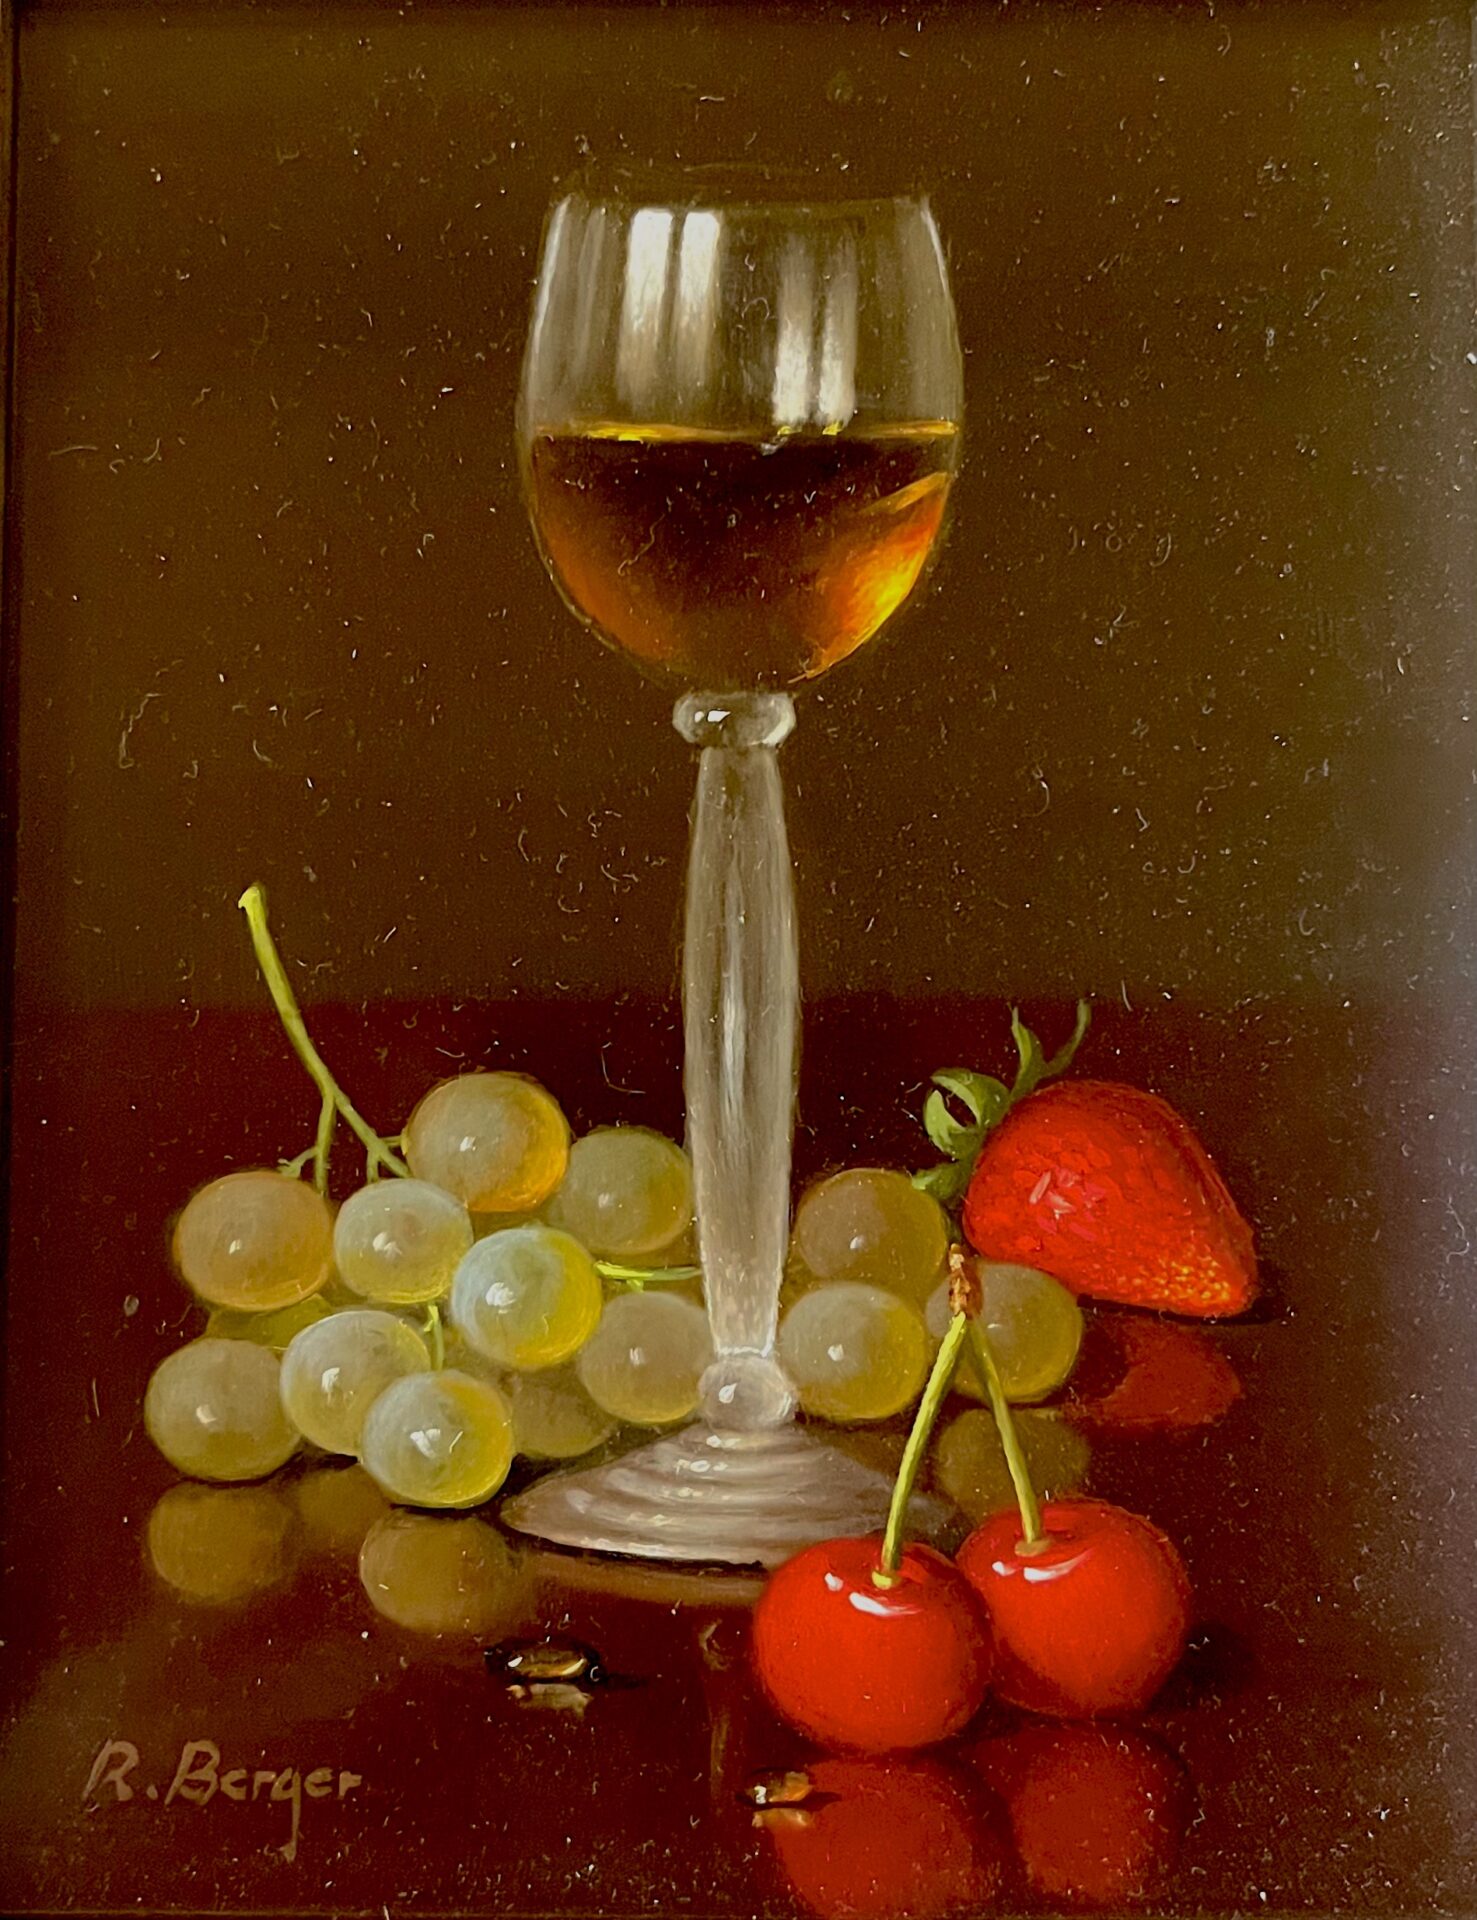 Berger wine glass strawberries